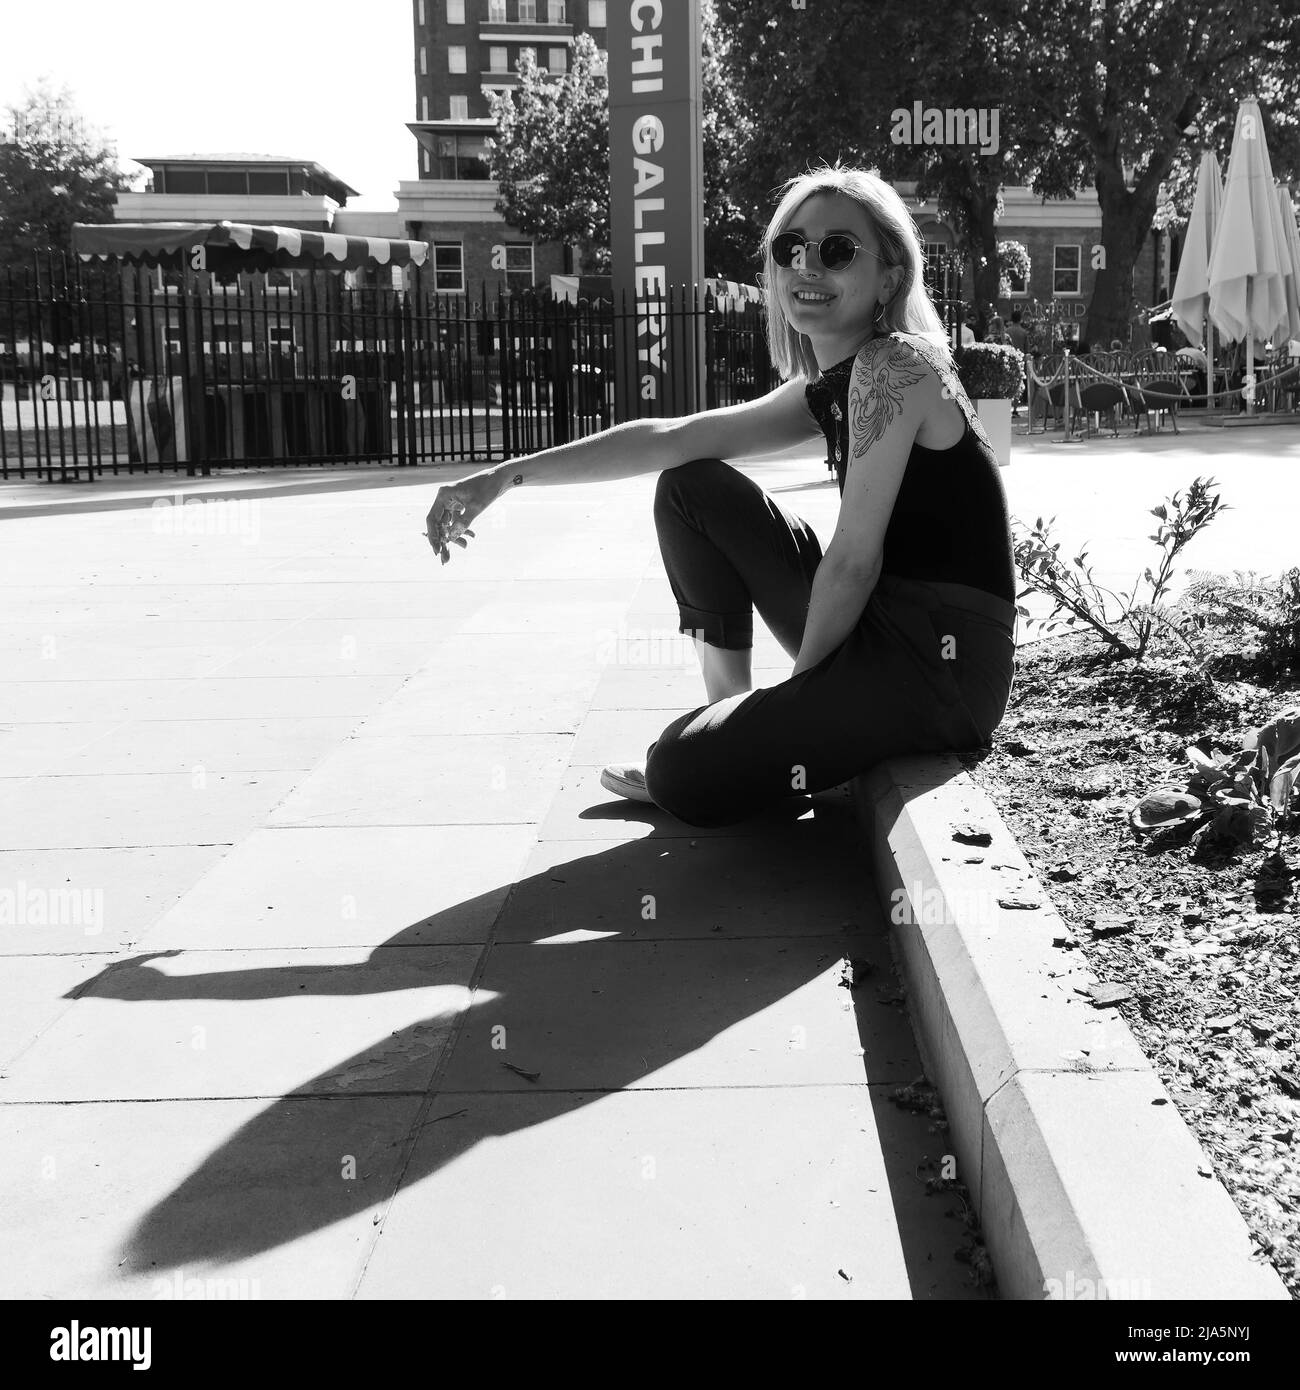 Hübsche Dame mit Tattoos, Nasenpiercing und Sonnenbrille sitzt auf einem Bordstein, lächelt und raucht. Duke of York Square, Chelsea, London. Monochrom. Stockfoto